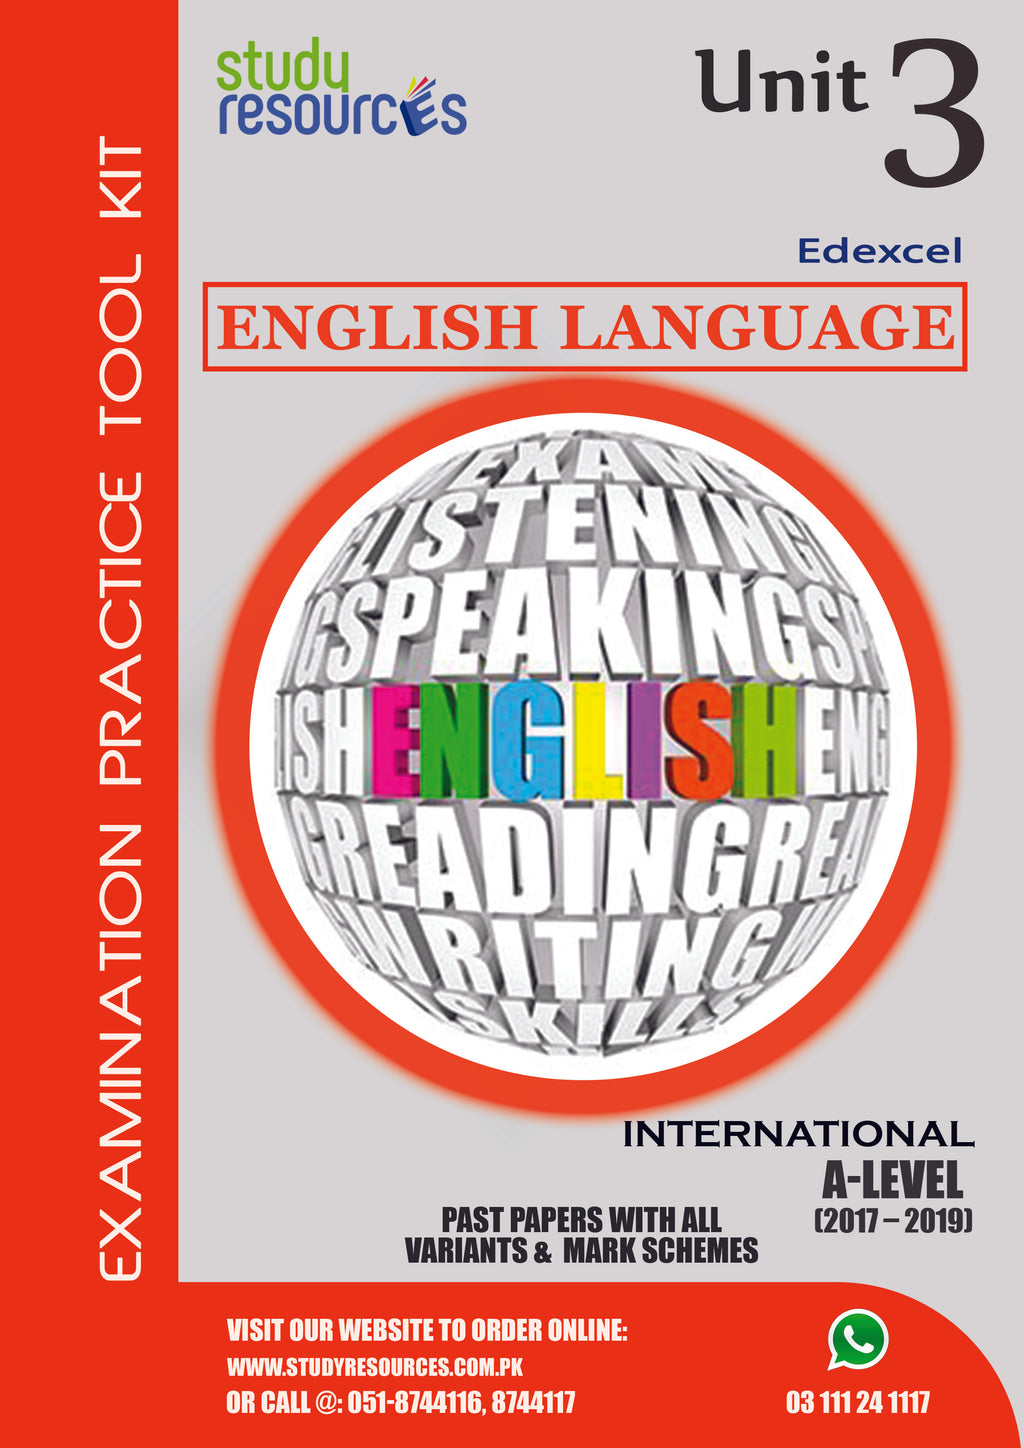 Edexcel A-Level English Language Unit-3 Past Papers (2017-2019)